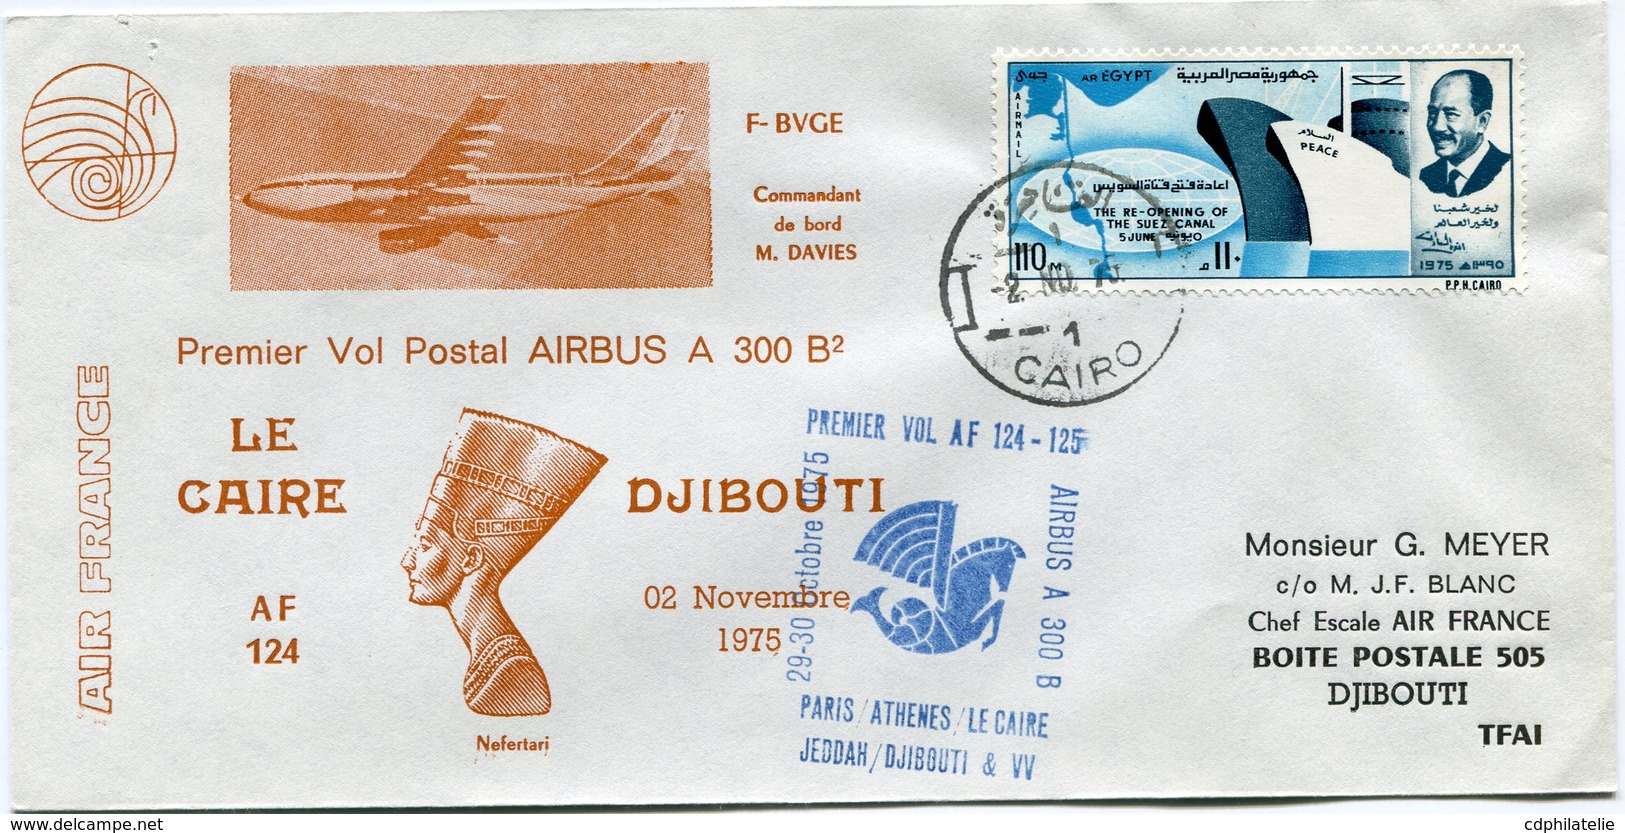 EGYPTE ENVELOPPE PREMIER VOL POSTAL AIRBUS A 300 B2 LE CAIRE - DJIBOUTI DU 02 NOVEMBRE 1975 - Aéreo